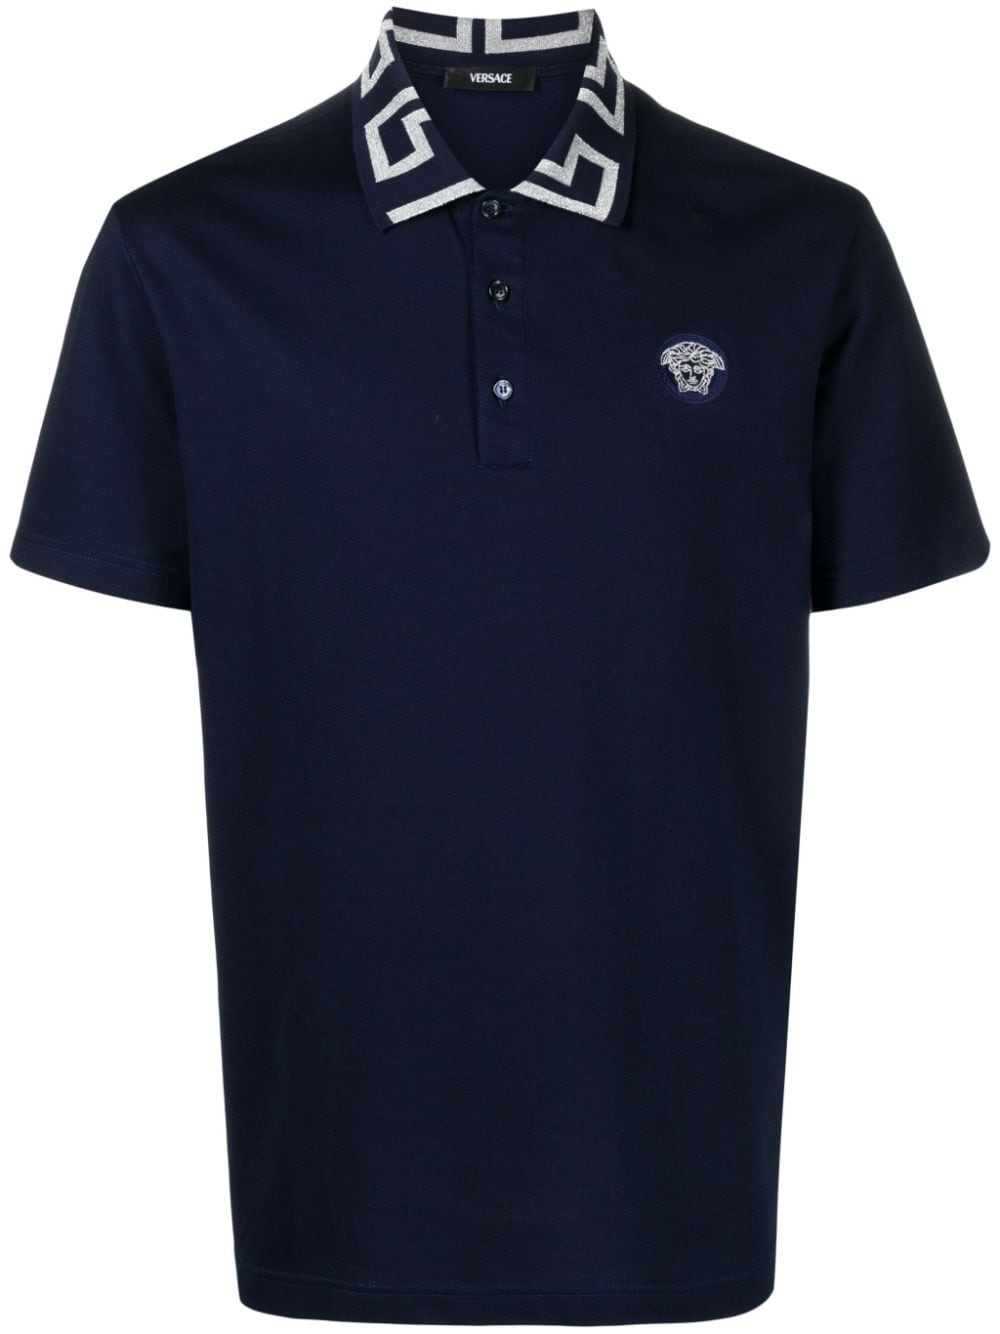 Greca-collar cotton polo shirt - 1